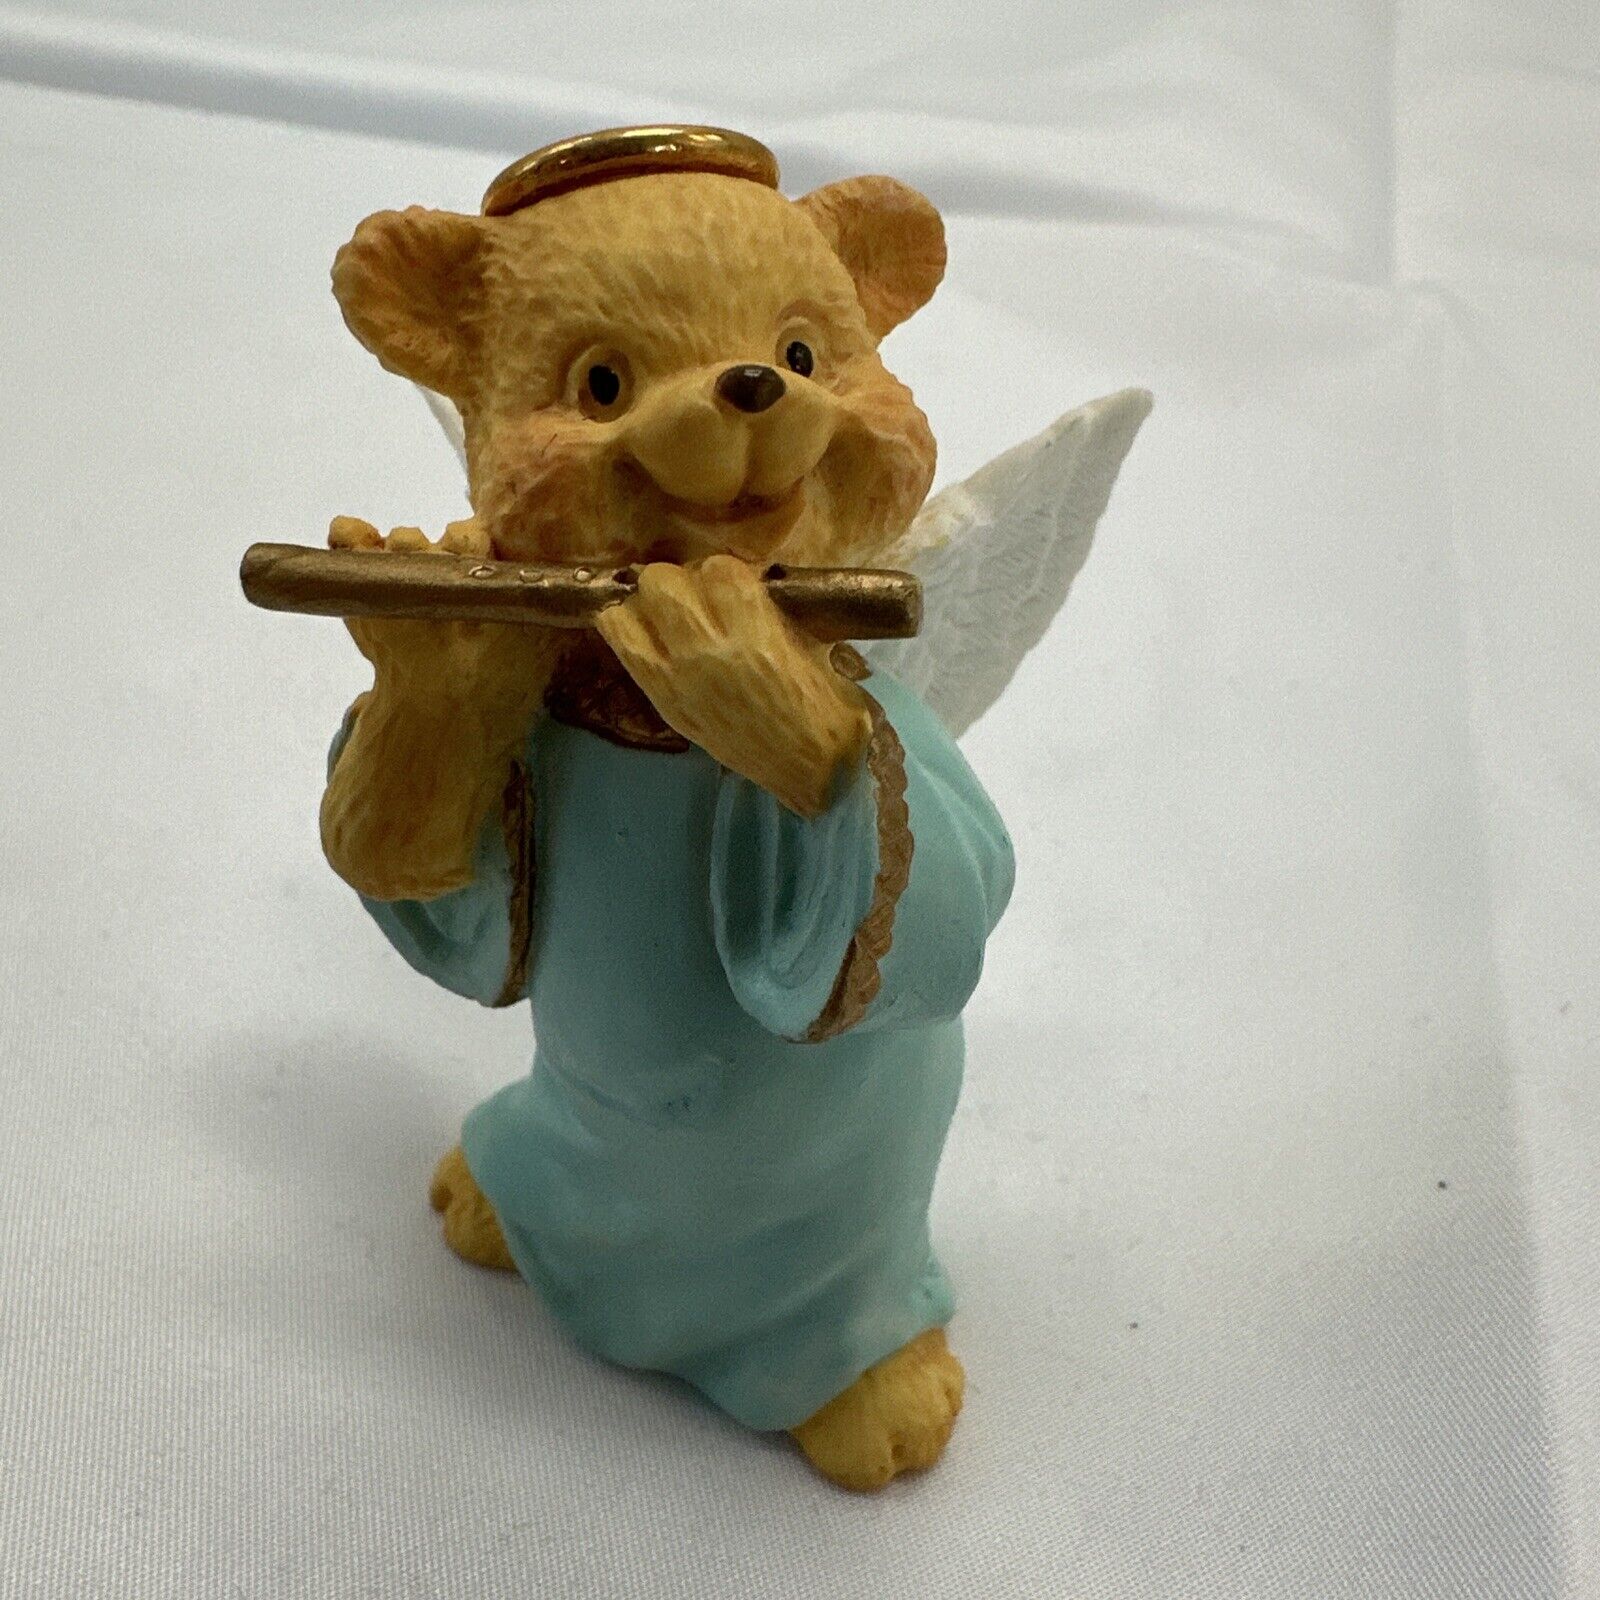 Vintage Angel Teddy Babies Mini Figurine Playing Flute